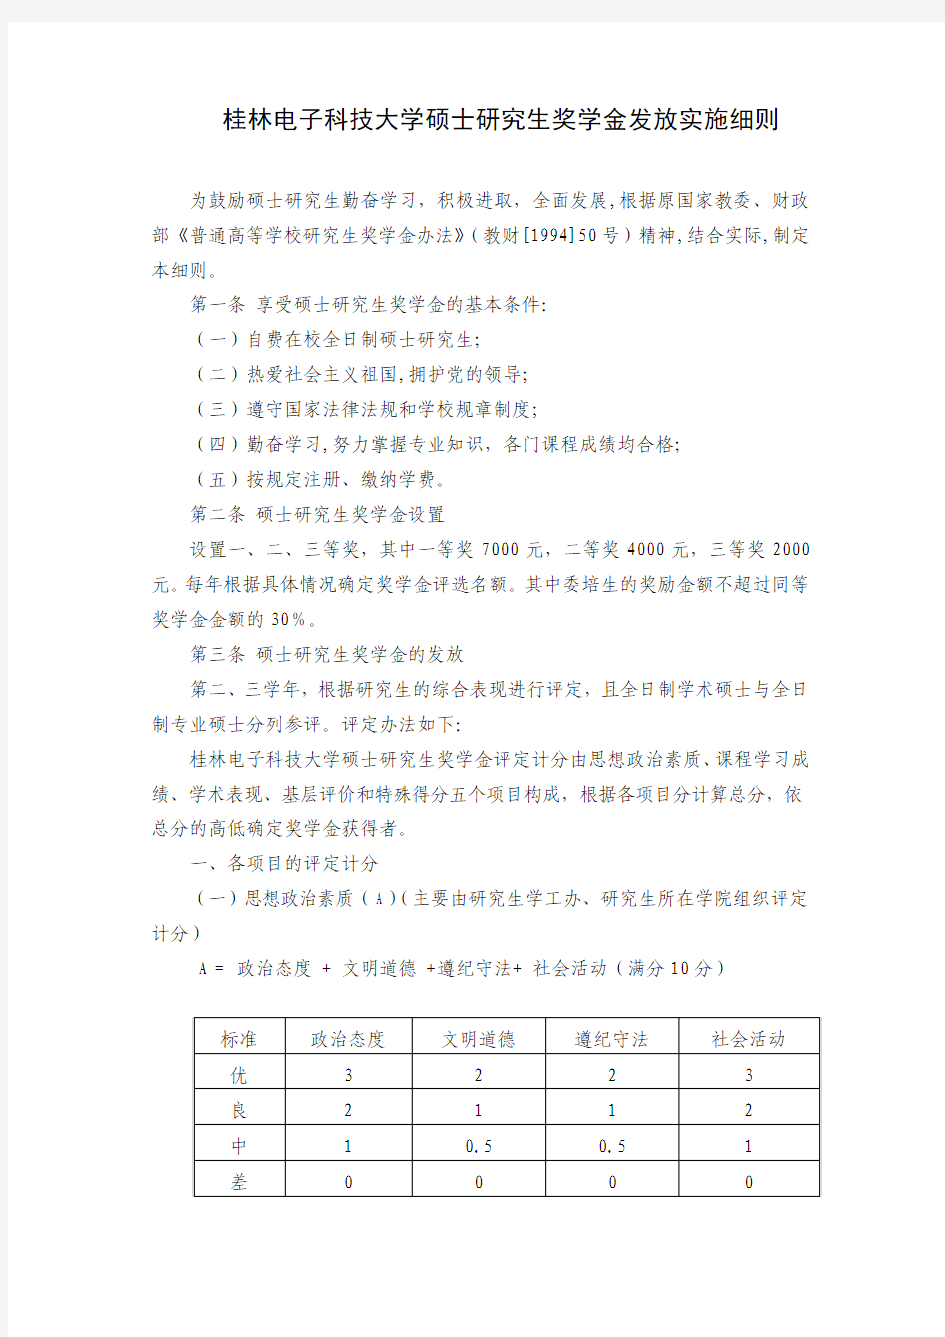 桂林电子科技大学硕士研究生奖学金发放实施细则(新)